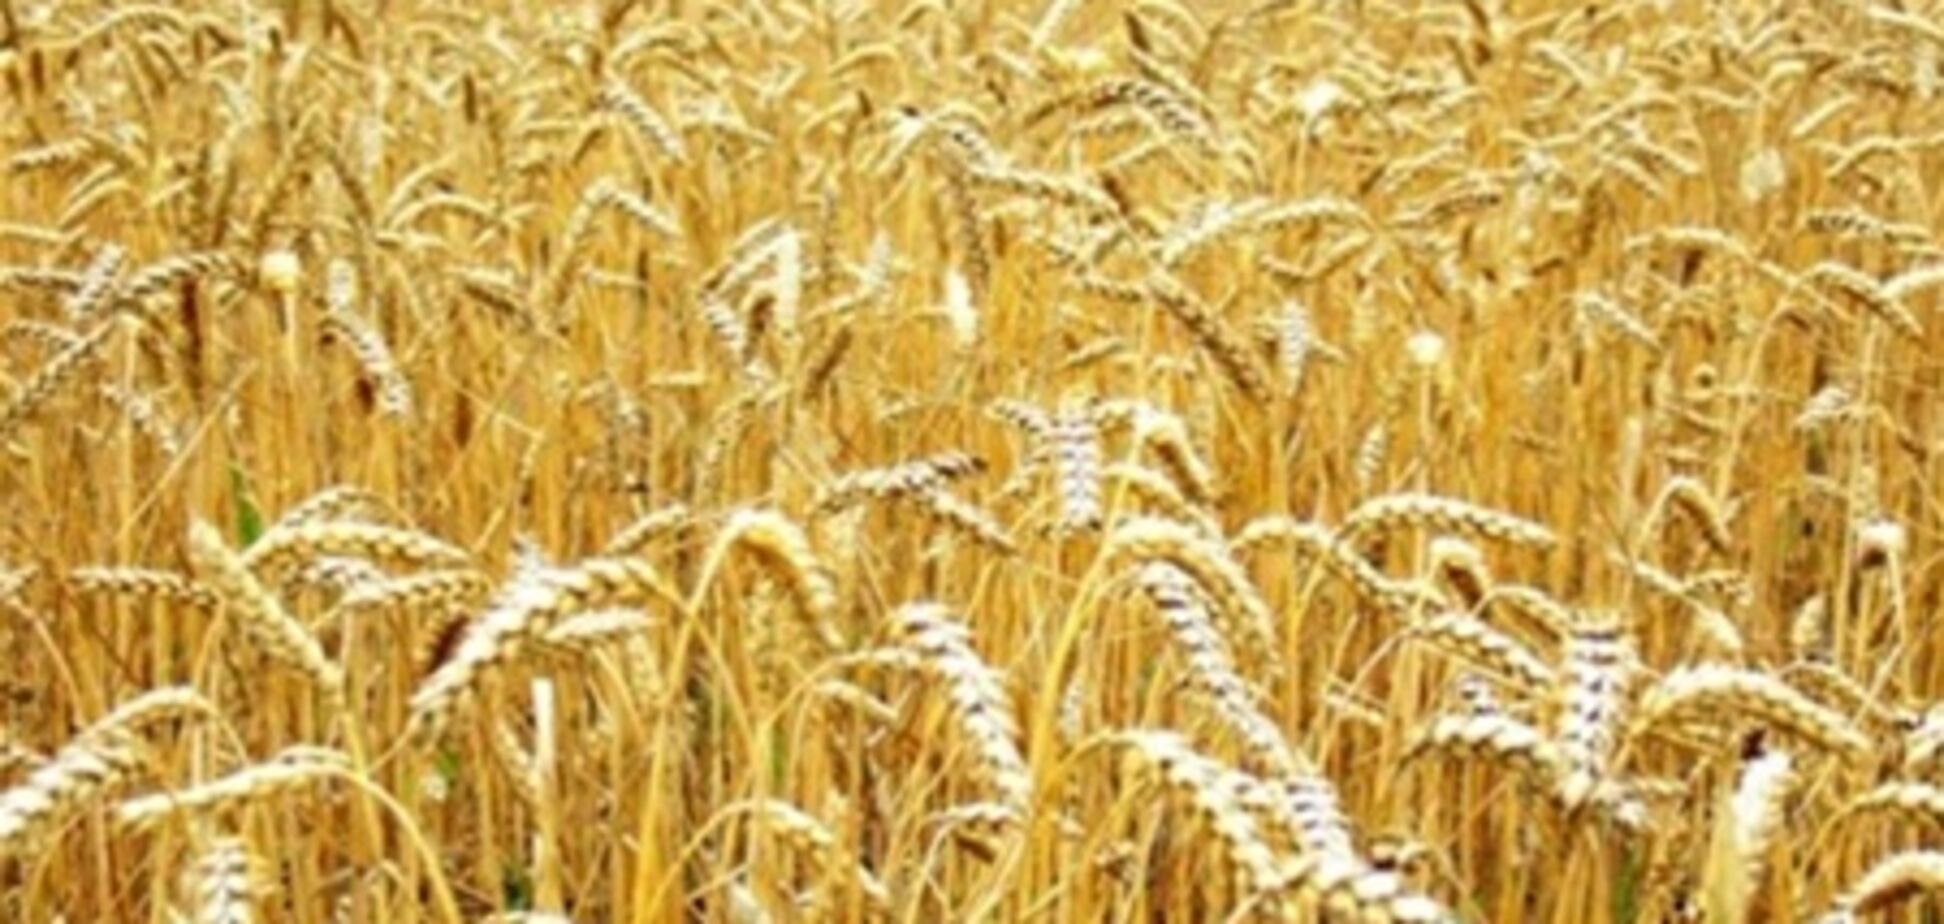 Зерно будет дорожать вопреки переизбытку урожая